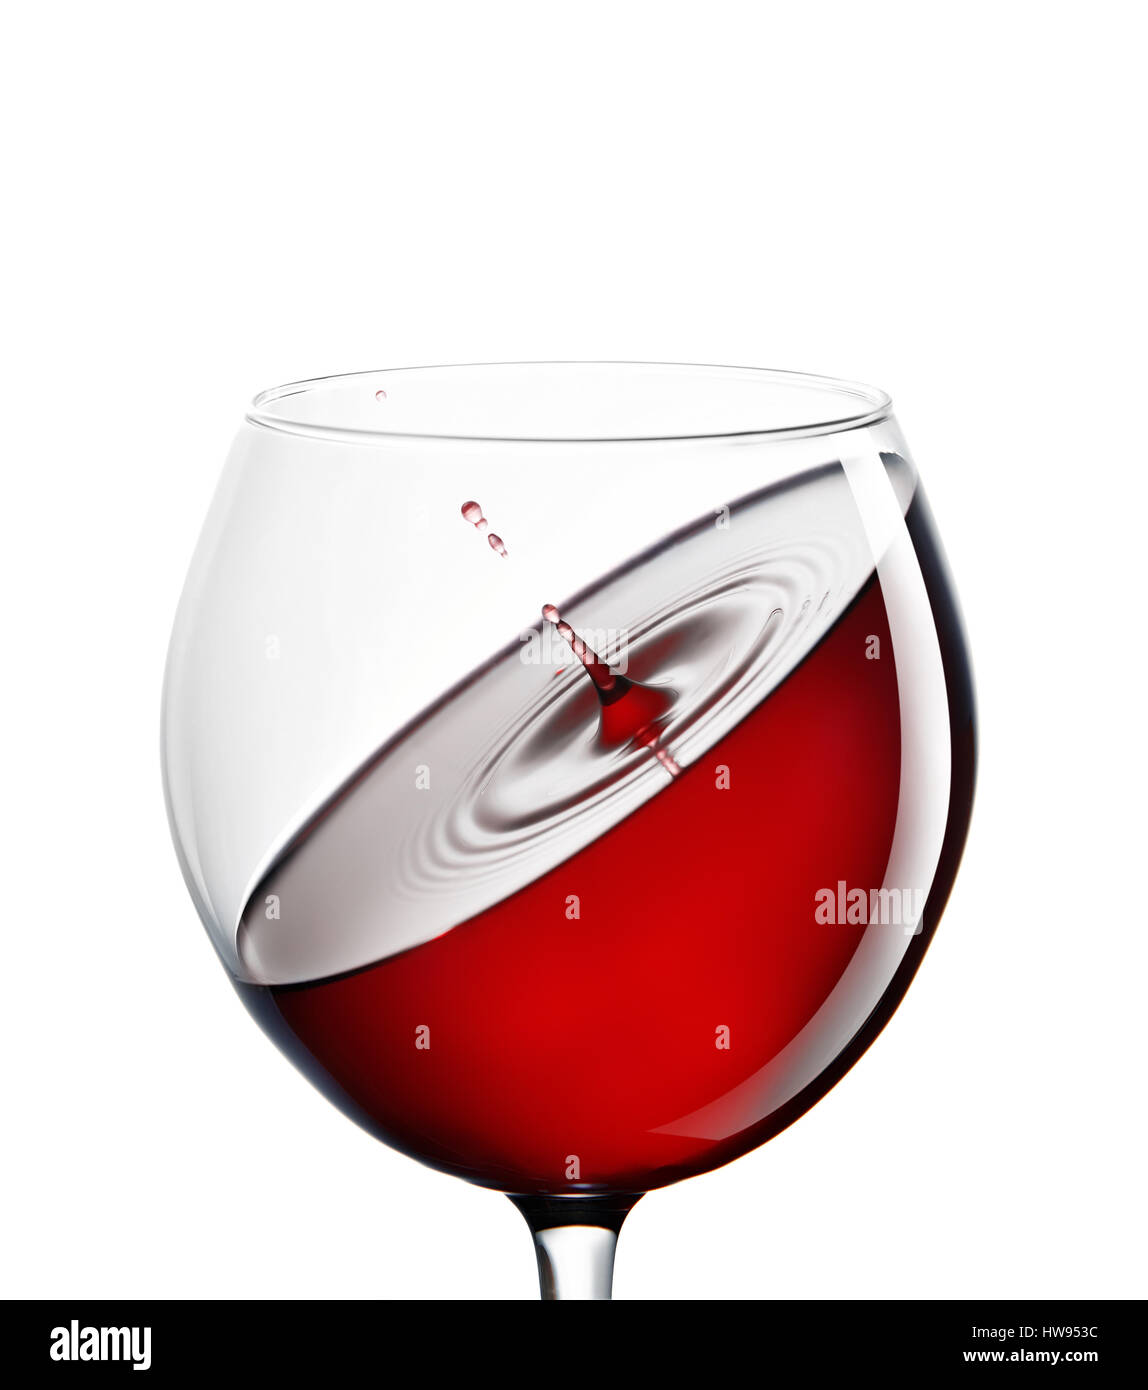 Dans un verre de vin rouge sur un fond blanc. Le concept de boissons et l'alcool. Verre à vin et la clarté du vin. L'esthétique et de plaisir. La relaxation. Luxur Banque D'Images